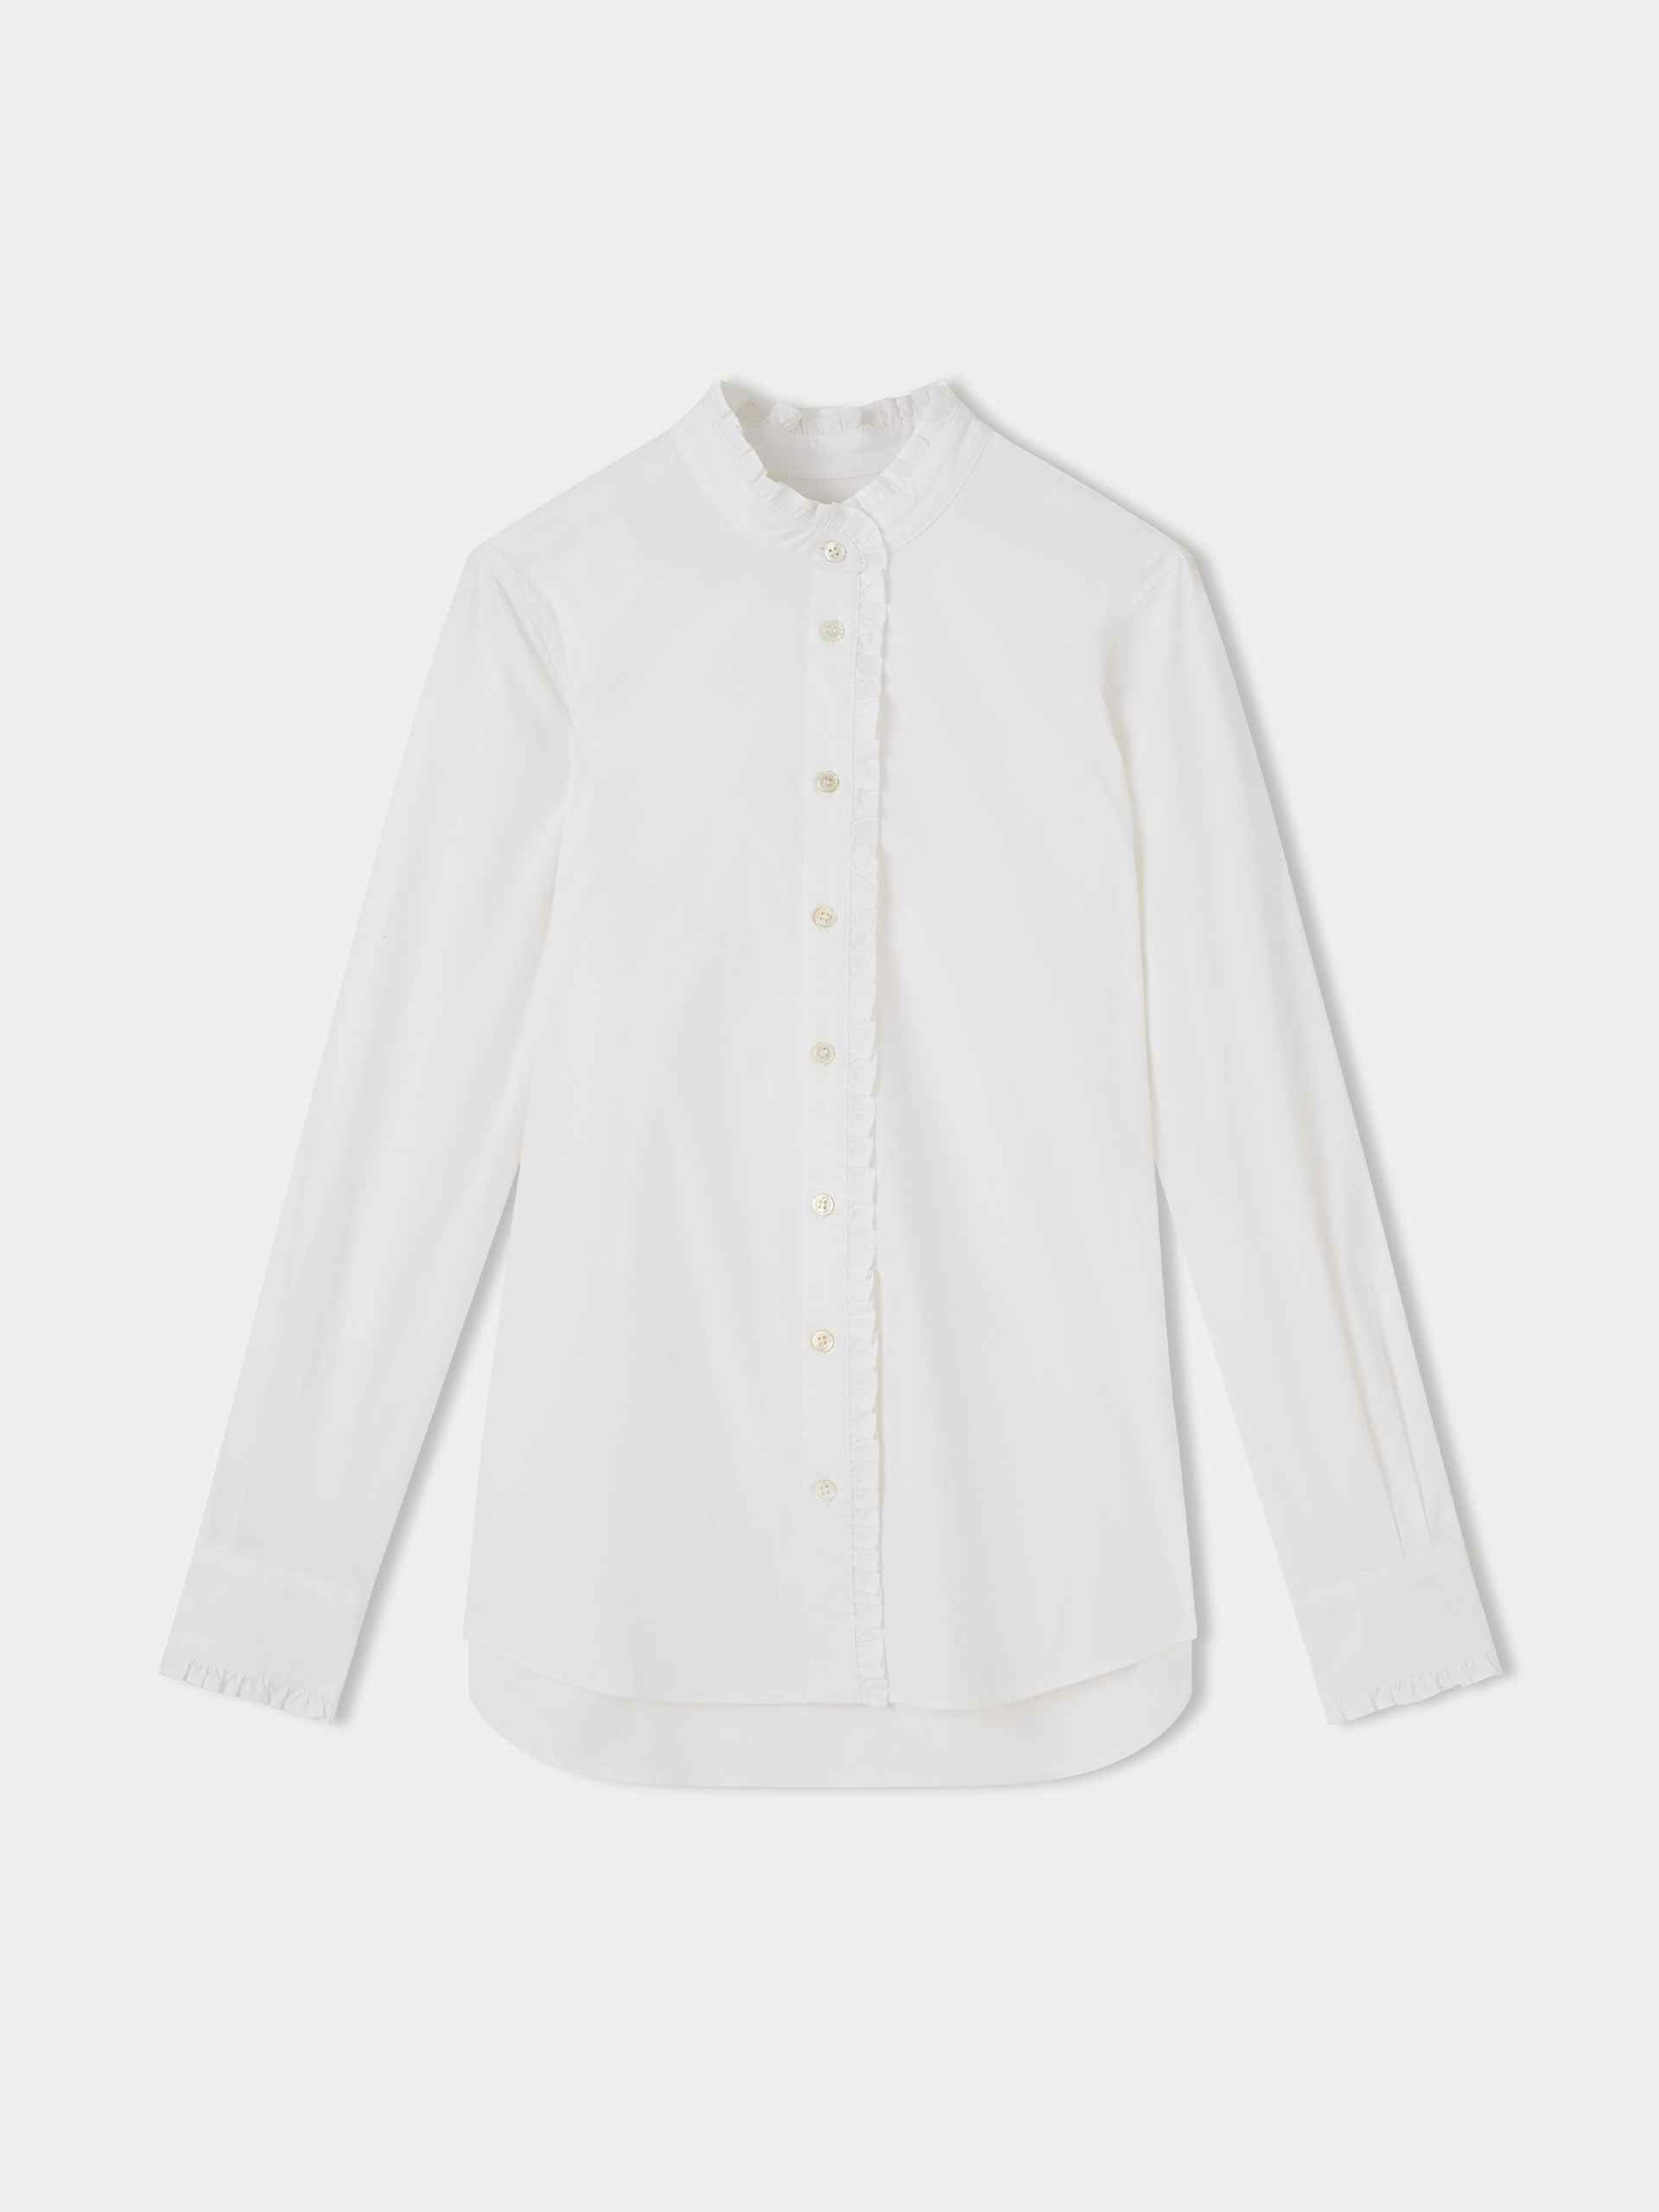 White ruffled shirt